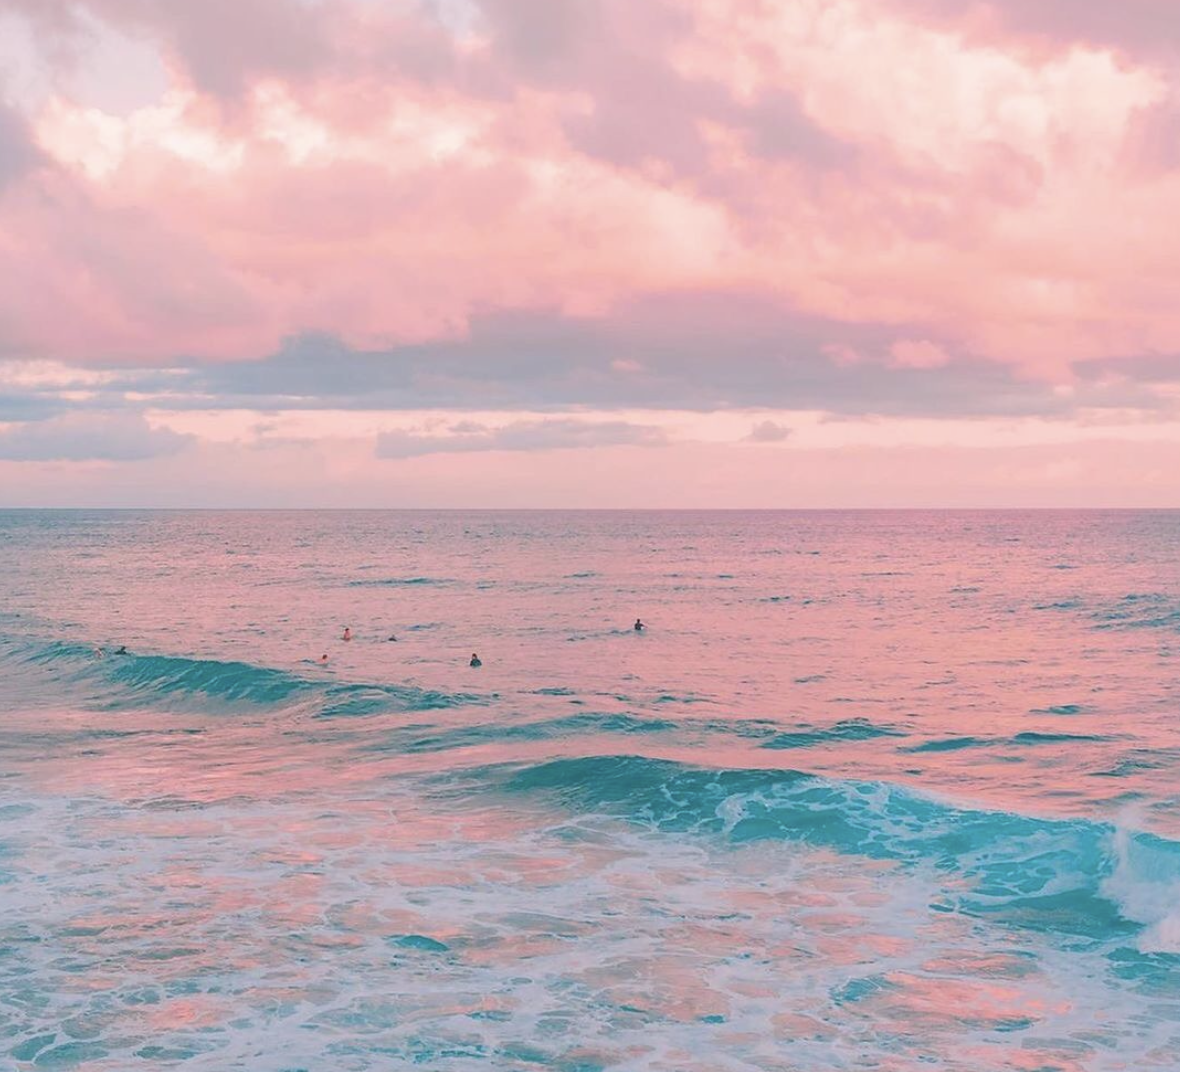 The Pink Ocean Of Los Coloradas Is A Bucket List Must! - Indie88